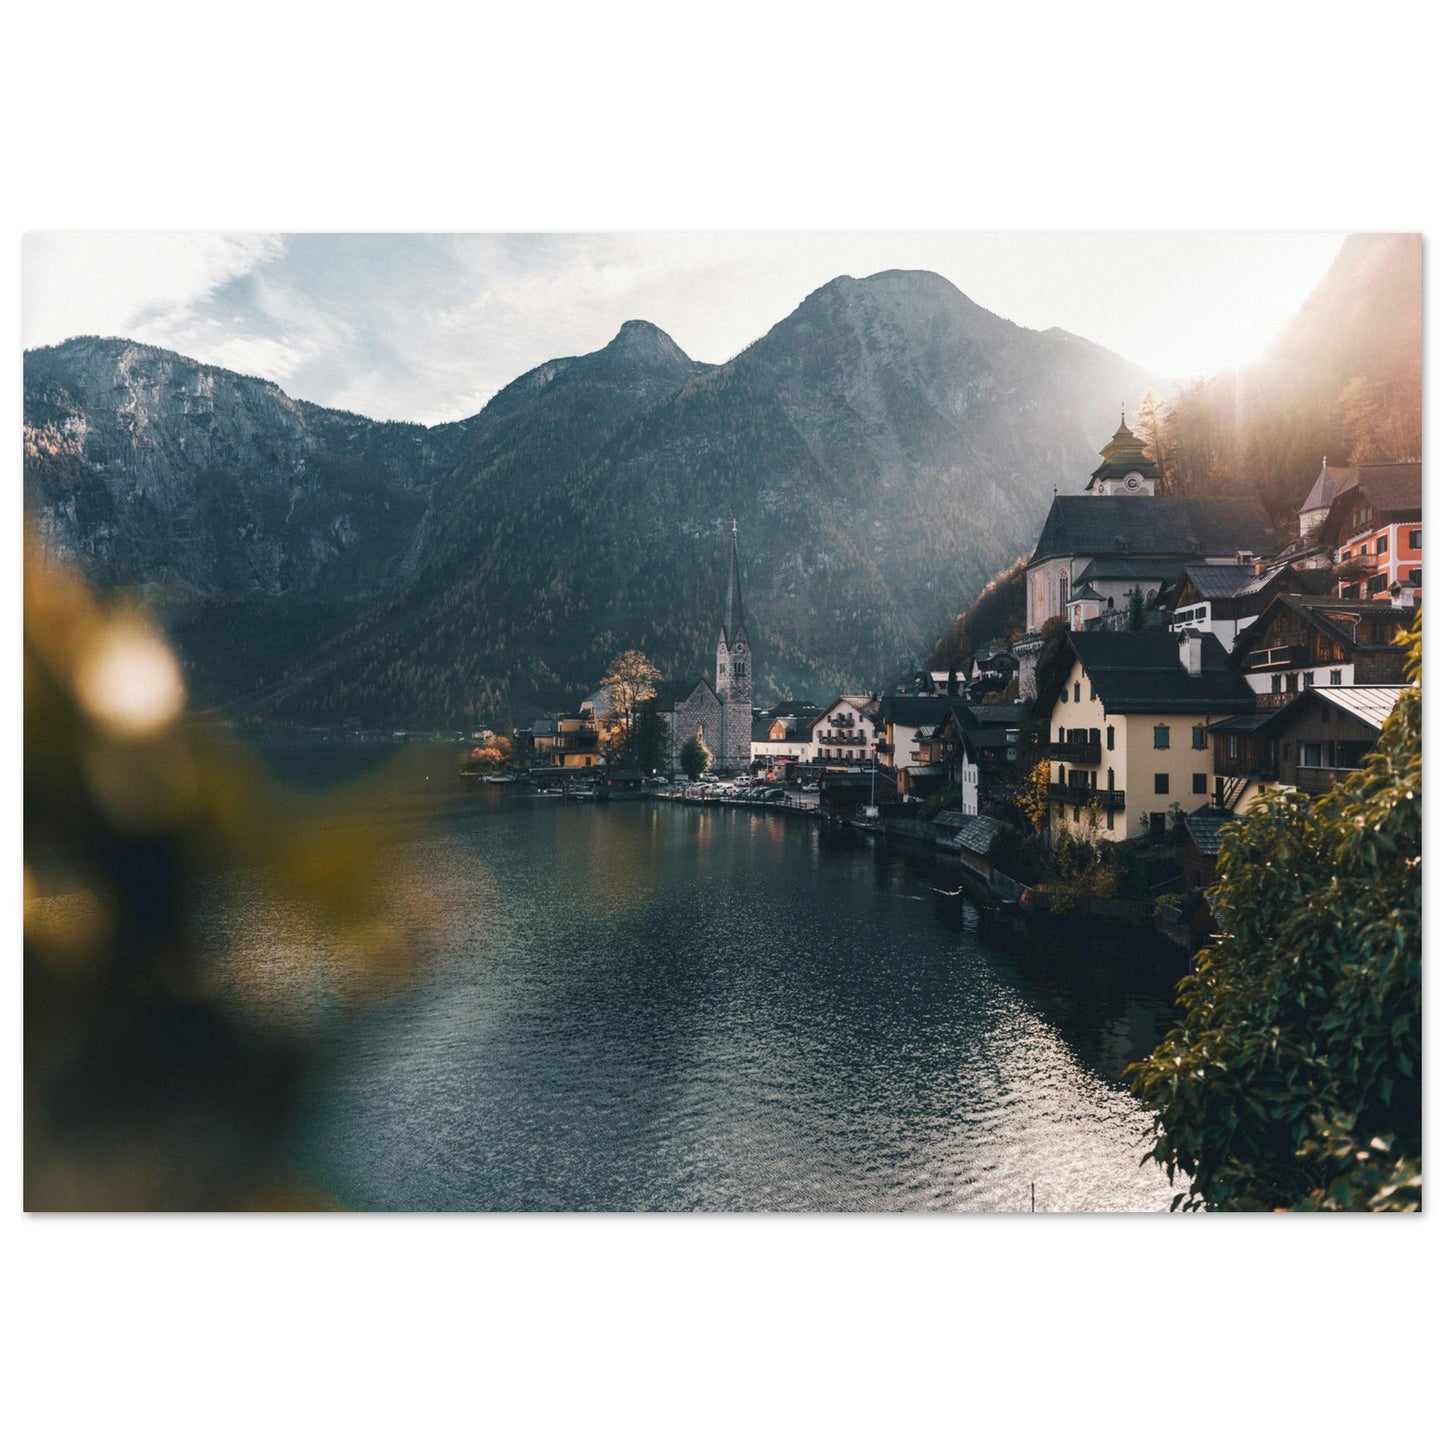 Vente Photo de Hallstatt, Autriche #1 - Tableau photo paysage